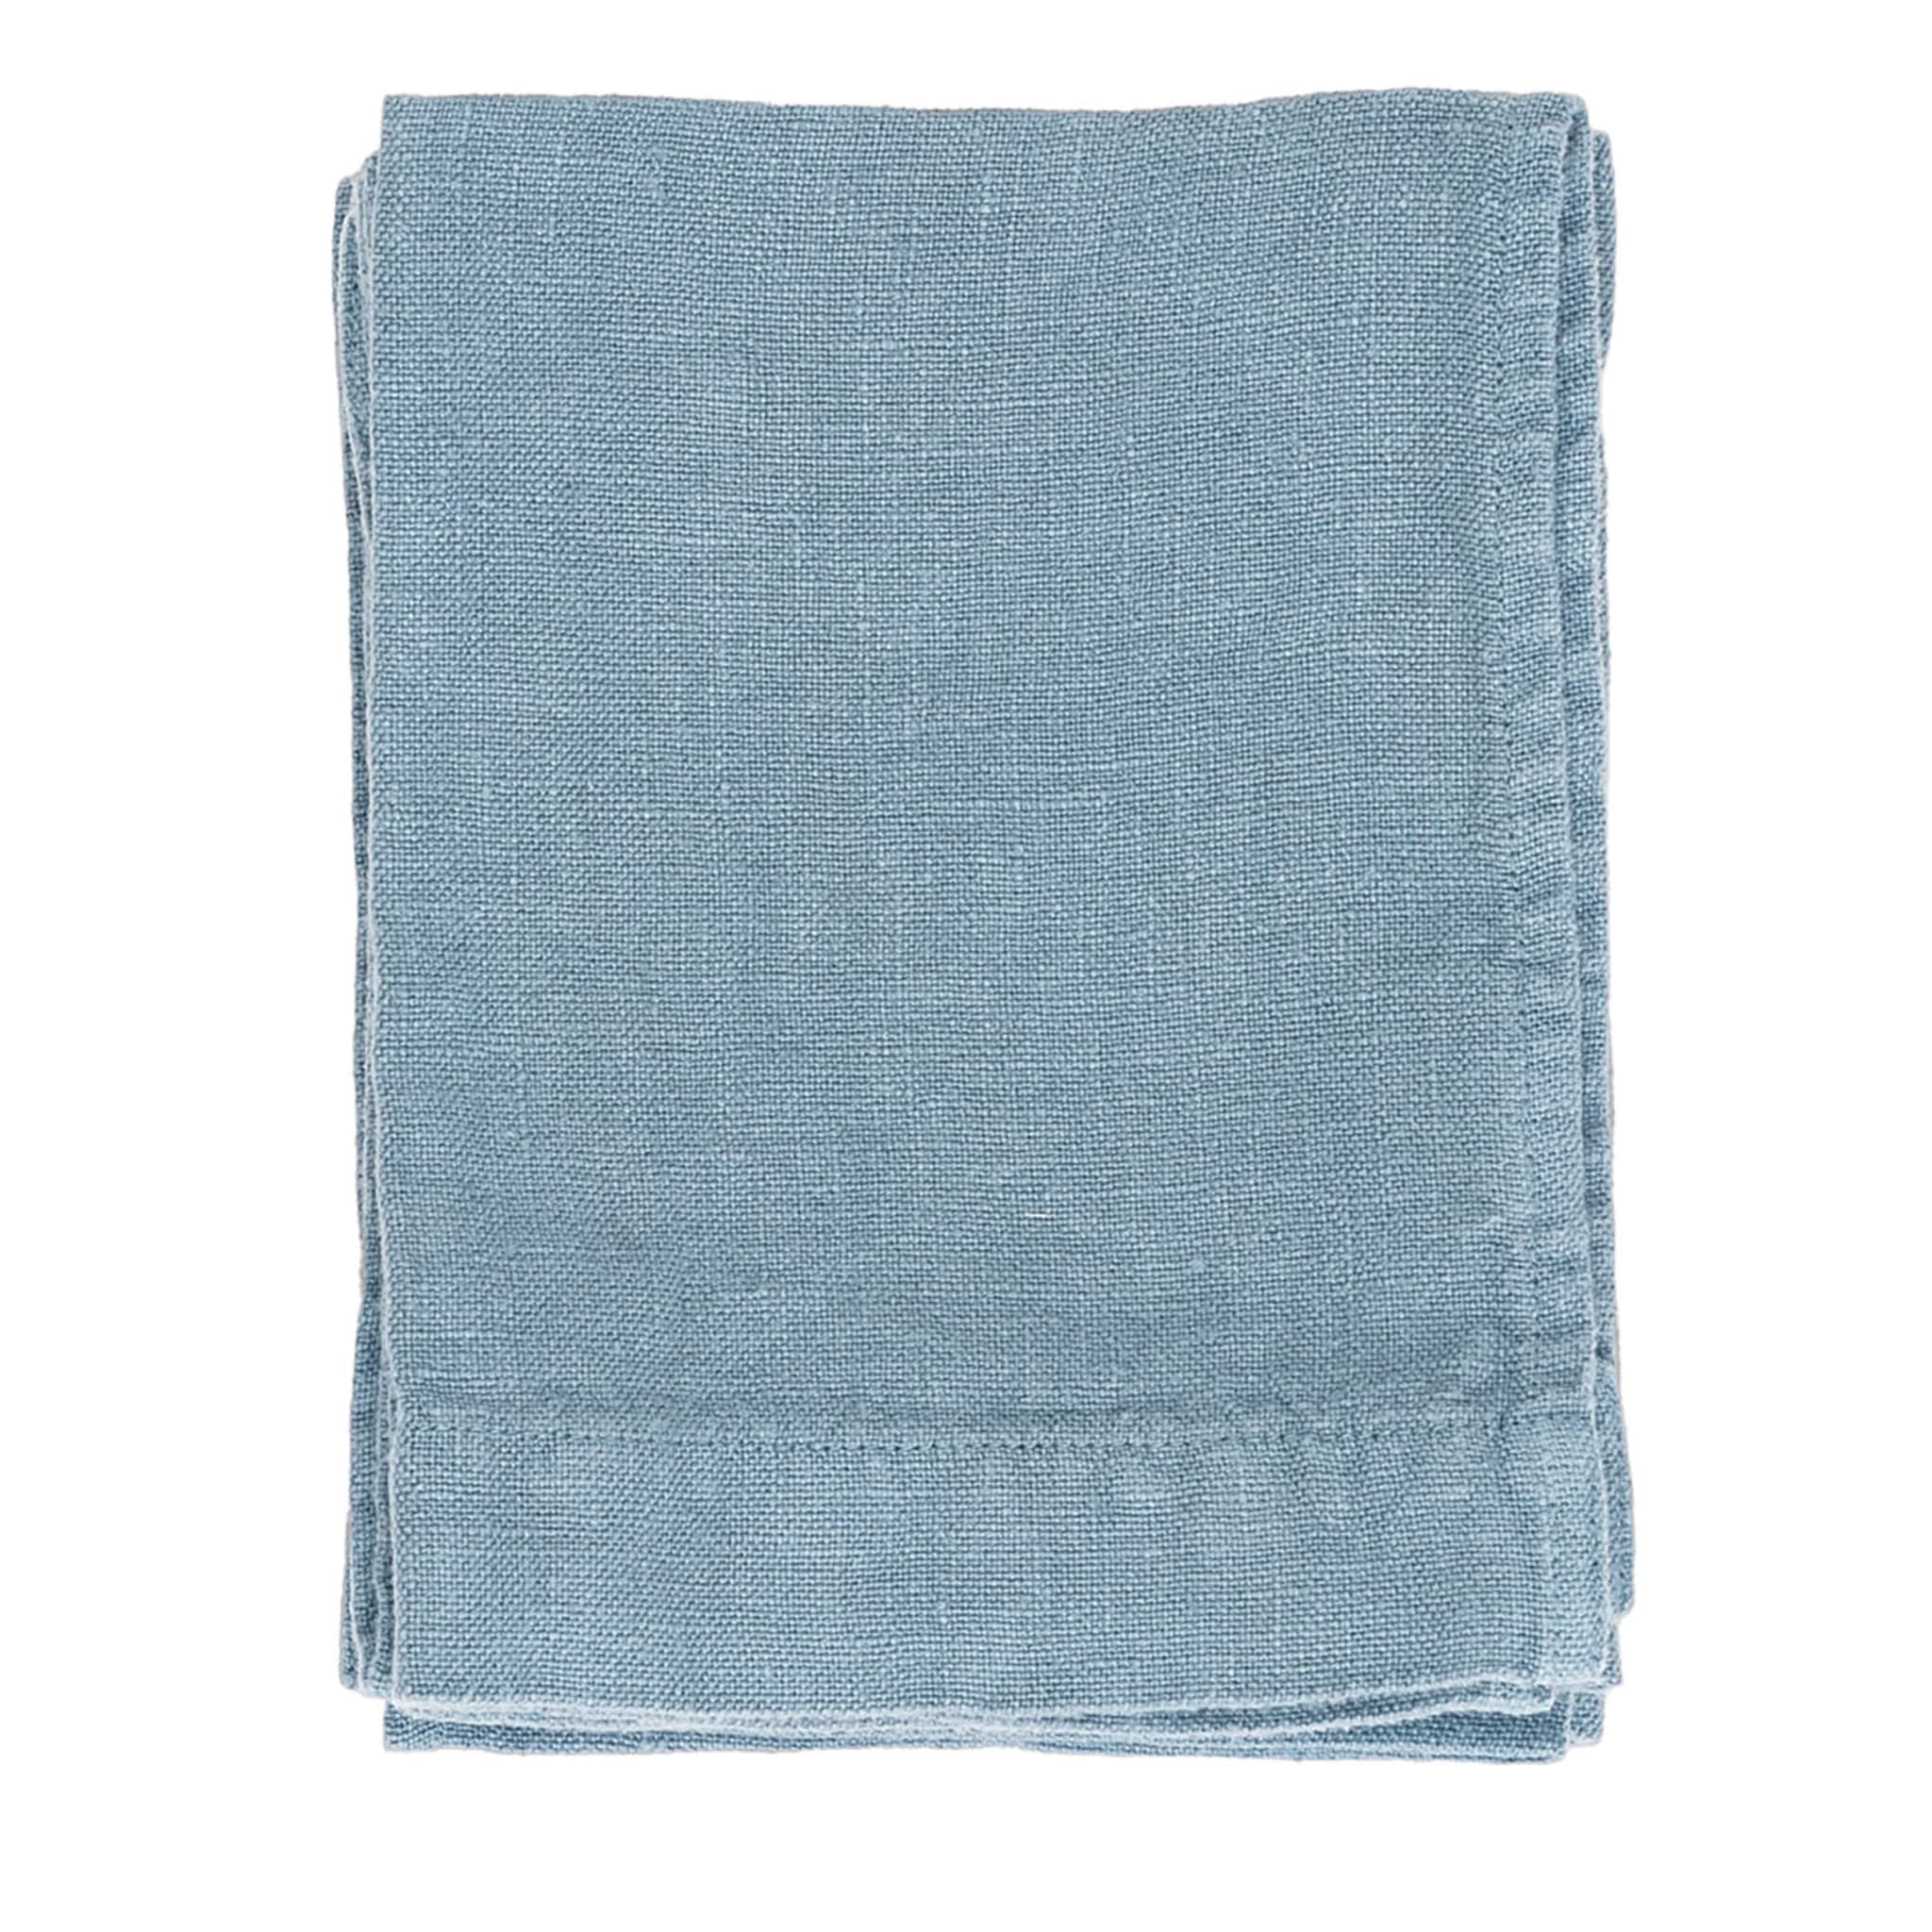 Set of 4 Light Blue Linen Hand Towels - Main view